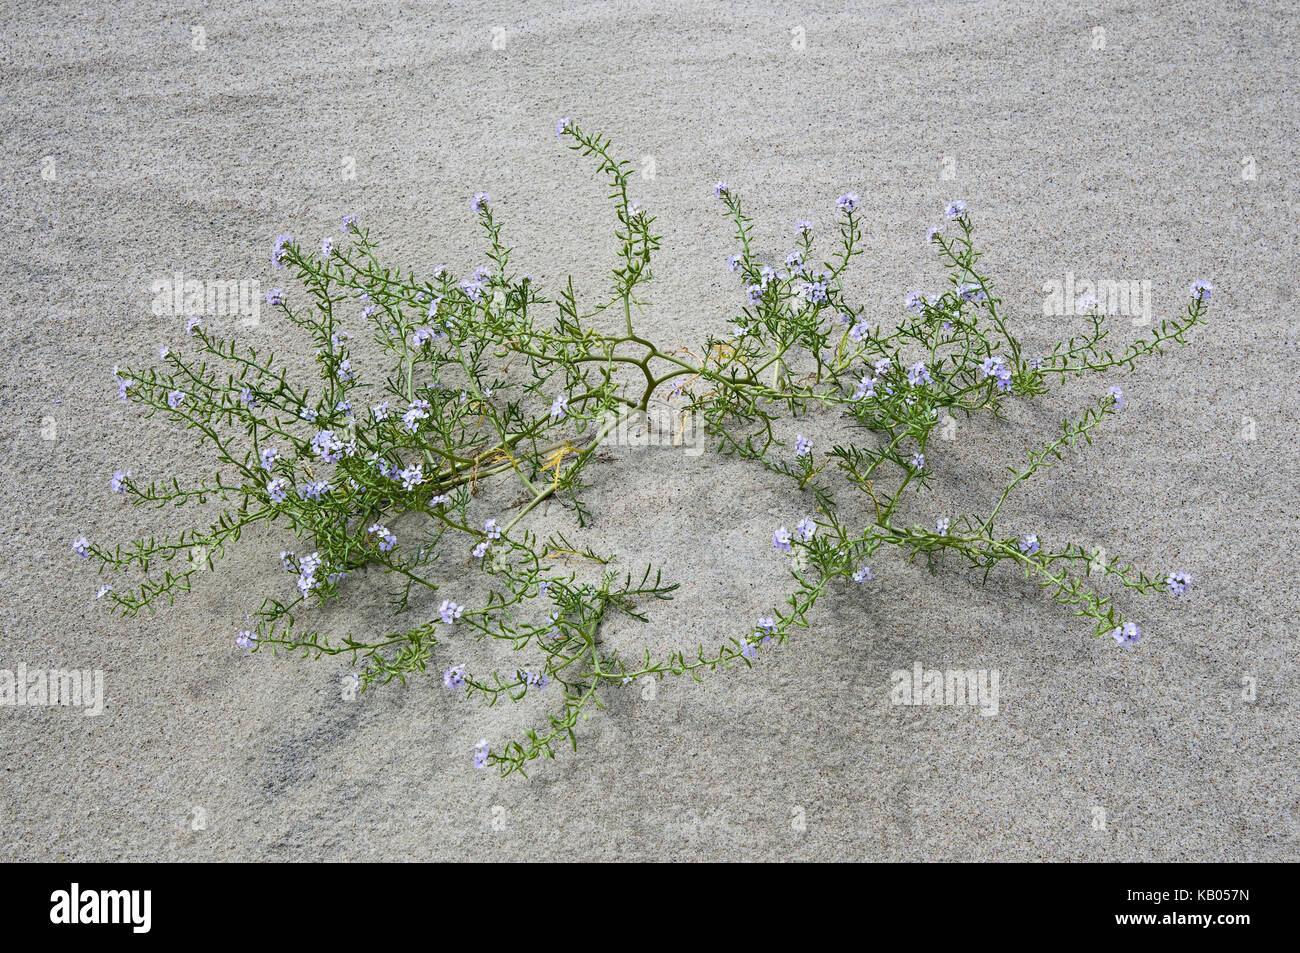 La botanica, impianti in sabbia, Foto Stock